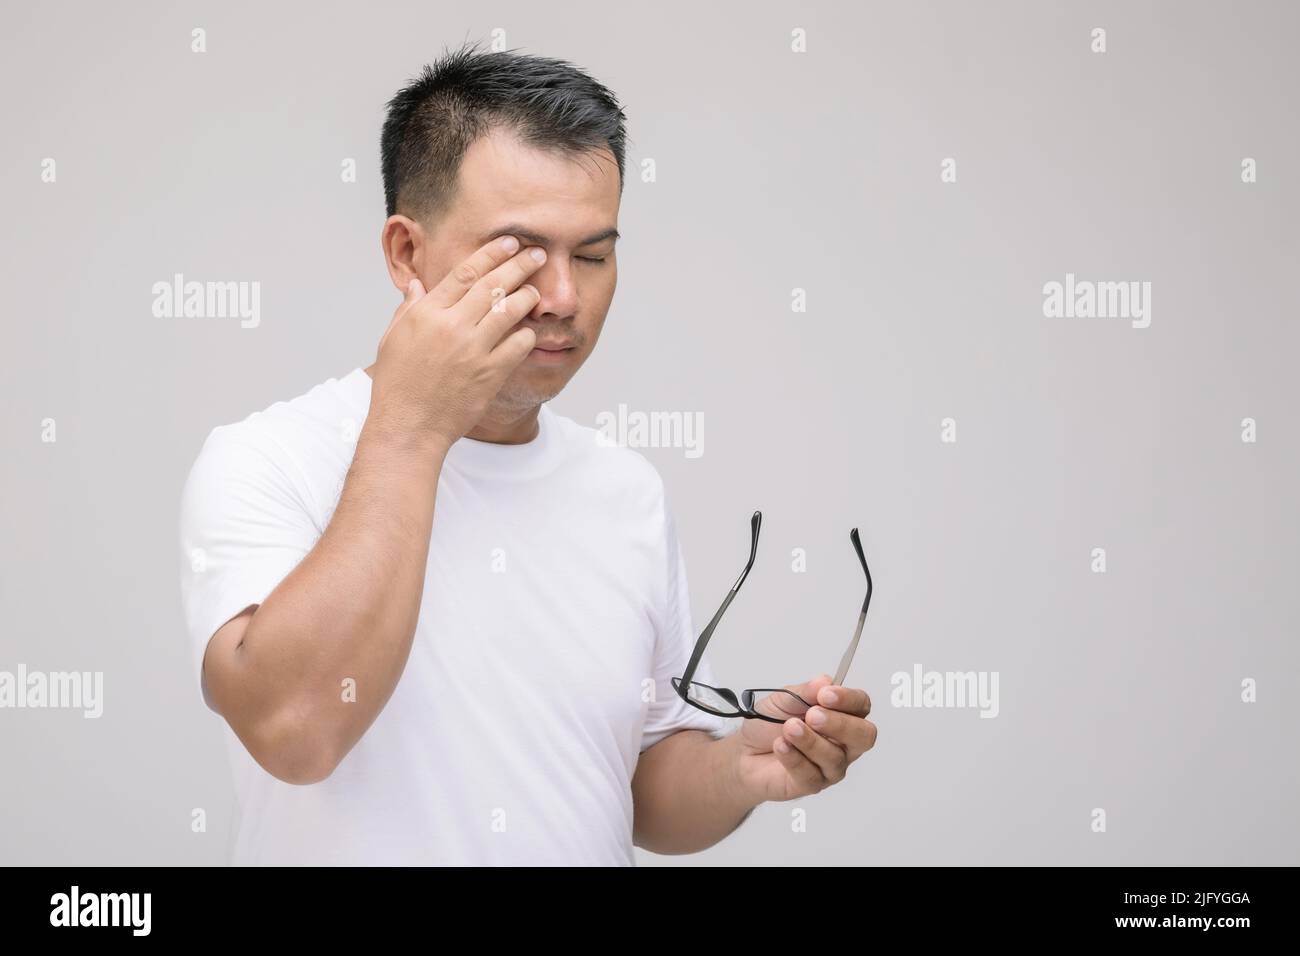 Concept d'irritation des yeux : Portrait de l'homme asiatique en posture de fatigue oculaire, irritation ou problème oculaire. Prise de vue en studio isolée sur fond gris Banque D'Images